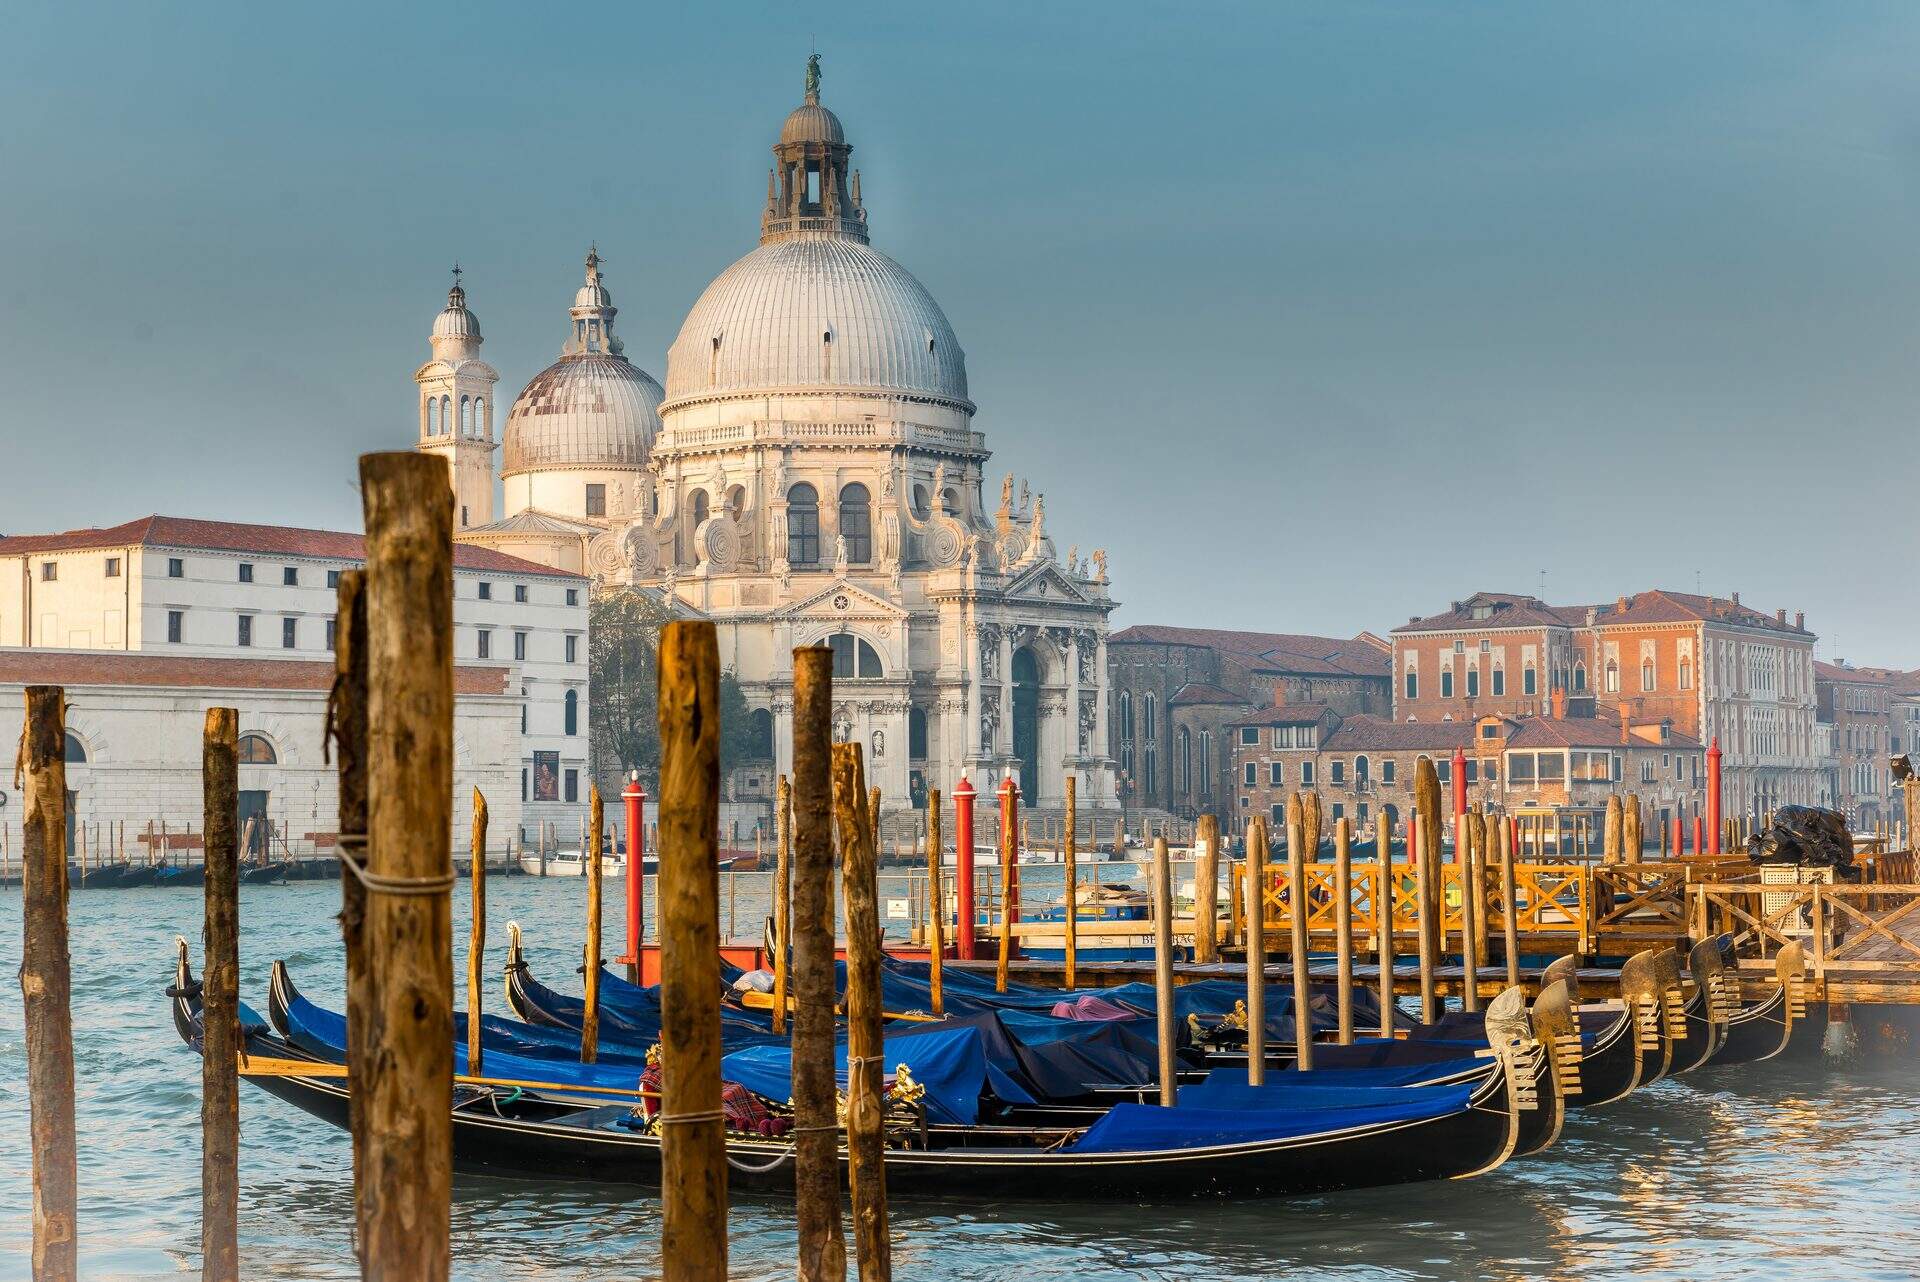 A view of Santa Maria delle Salute in Venice